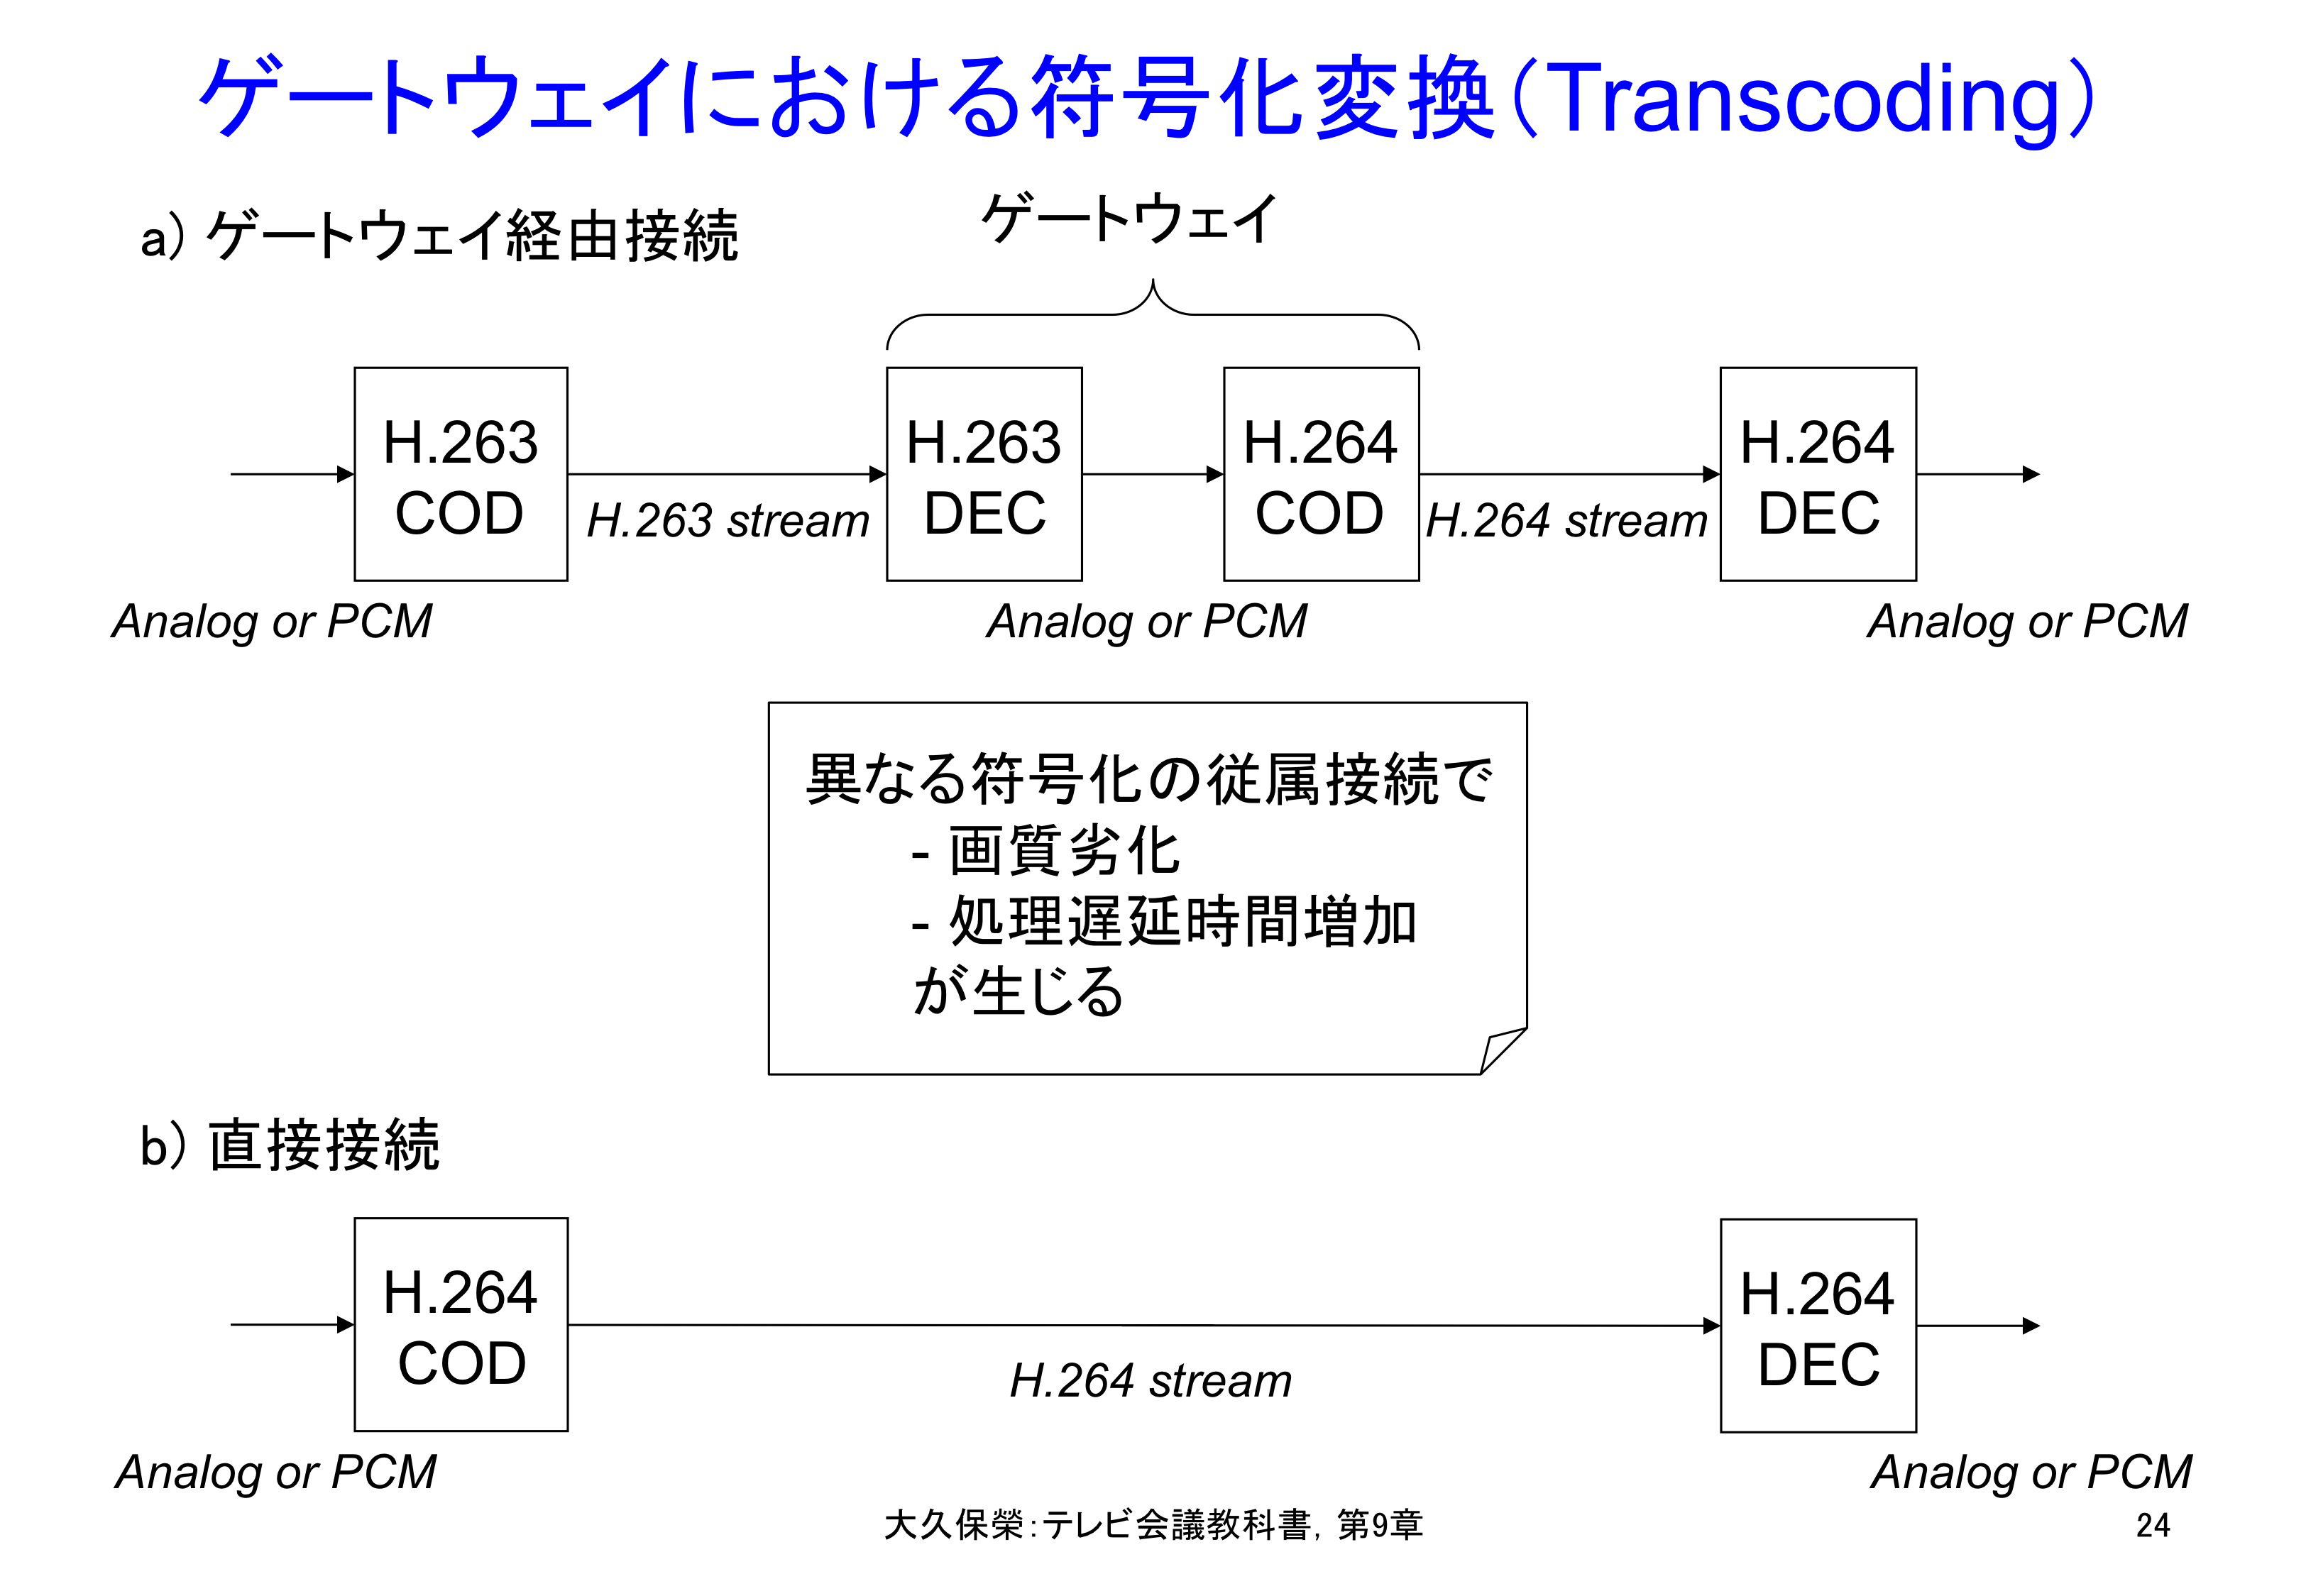 図9-24 ゲートウェイにおける符号化変換（Transcoding）